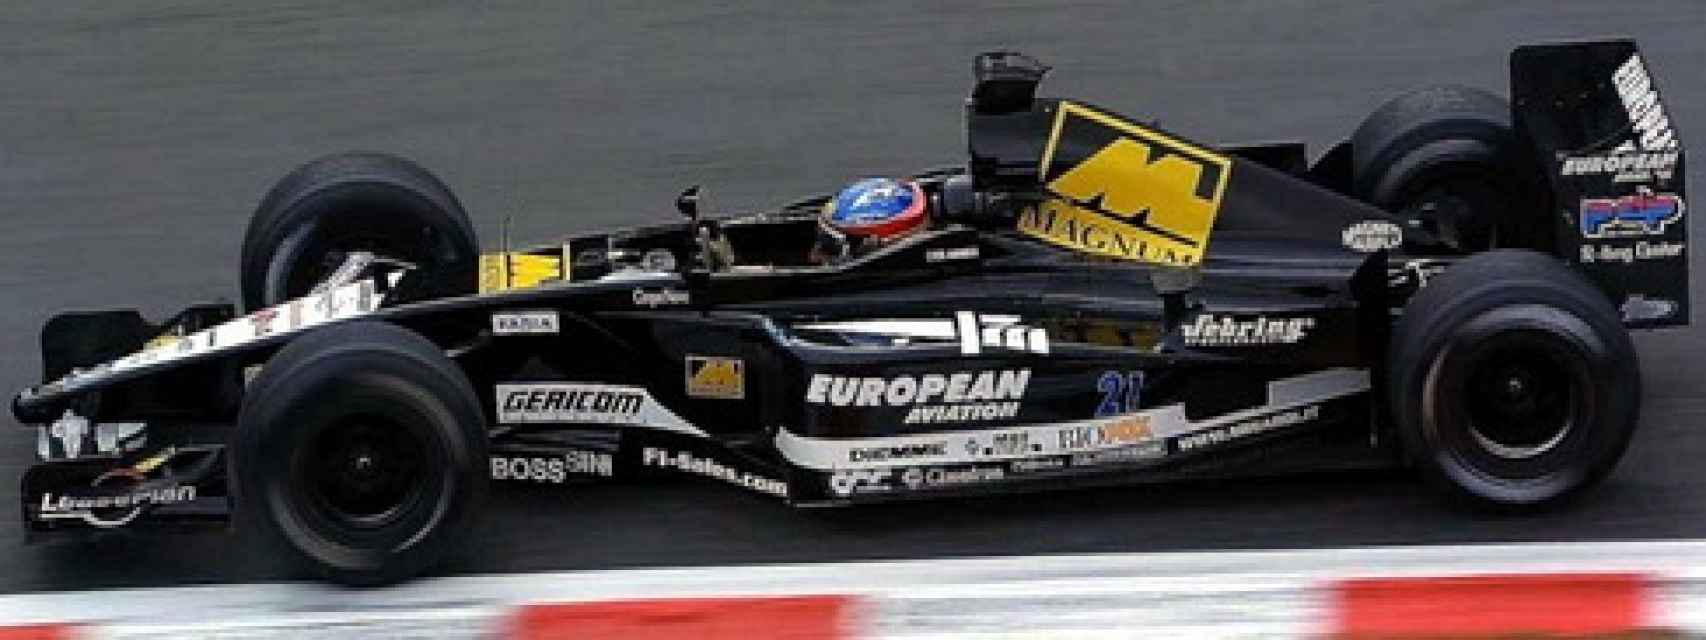 Fernando Alonso debutó en la Fórmula 1 en 2001, con la escudería Minardi